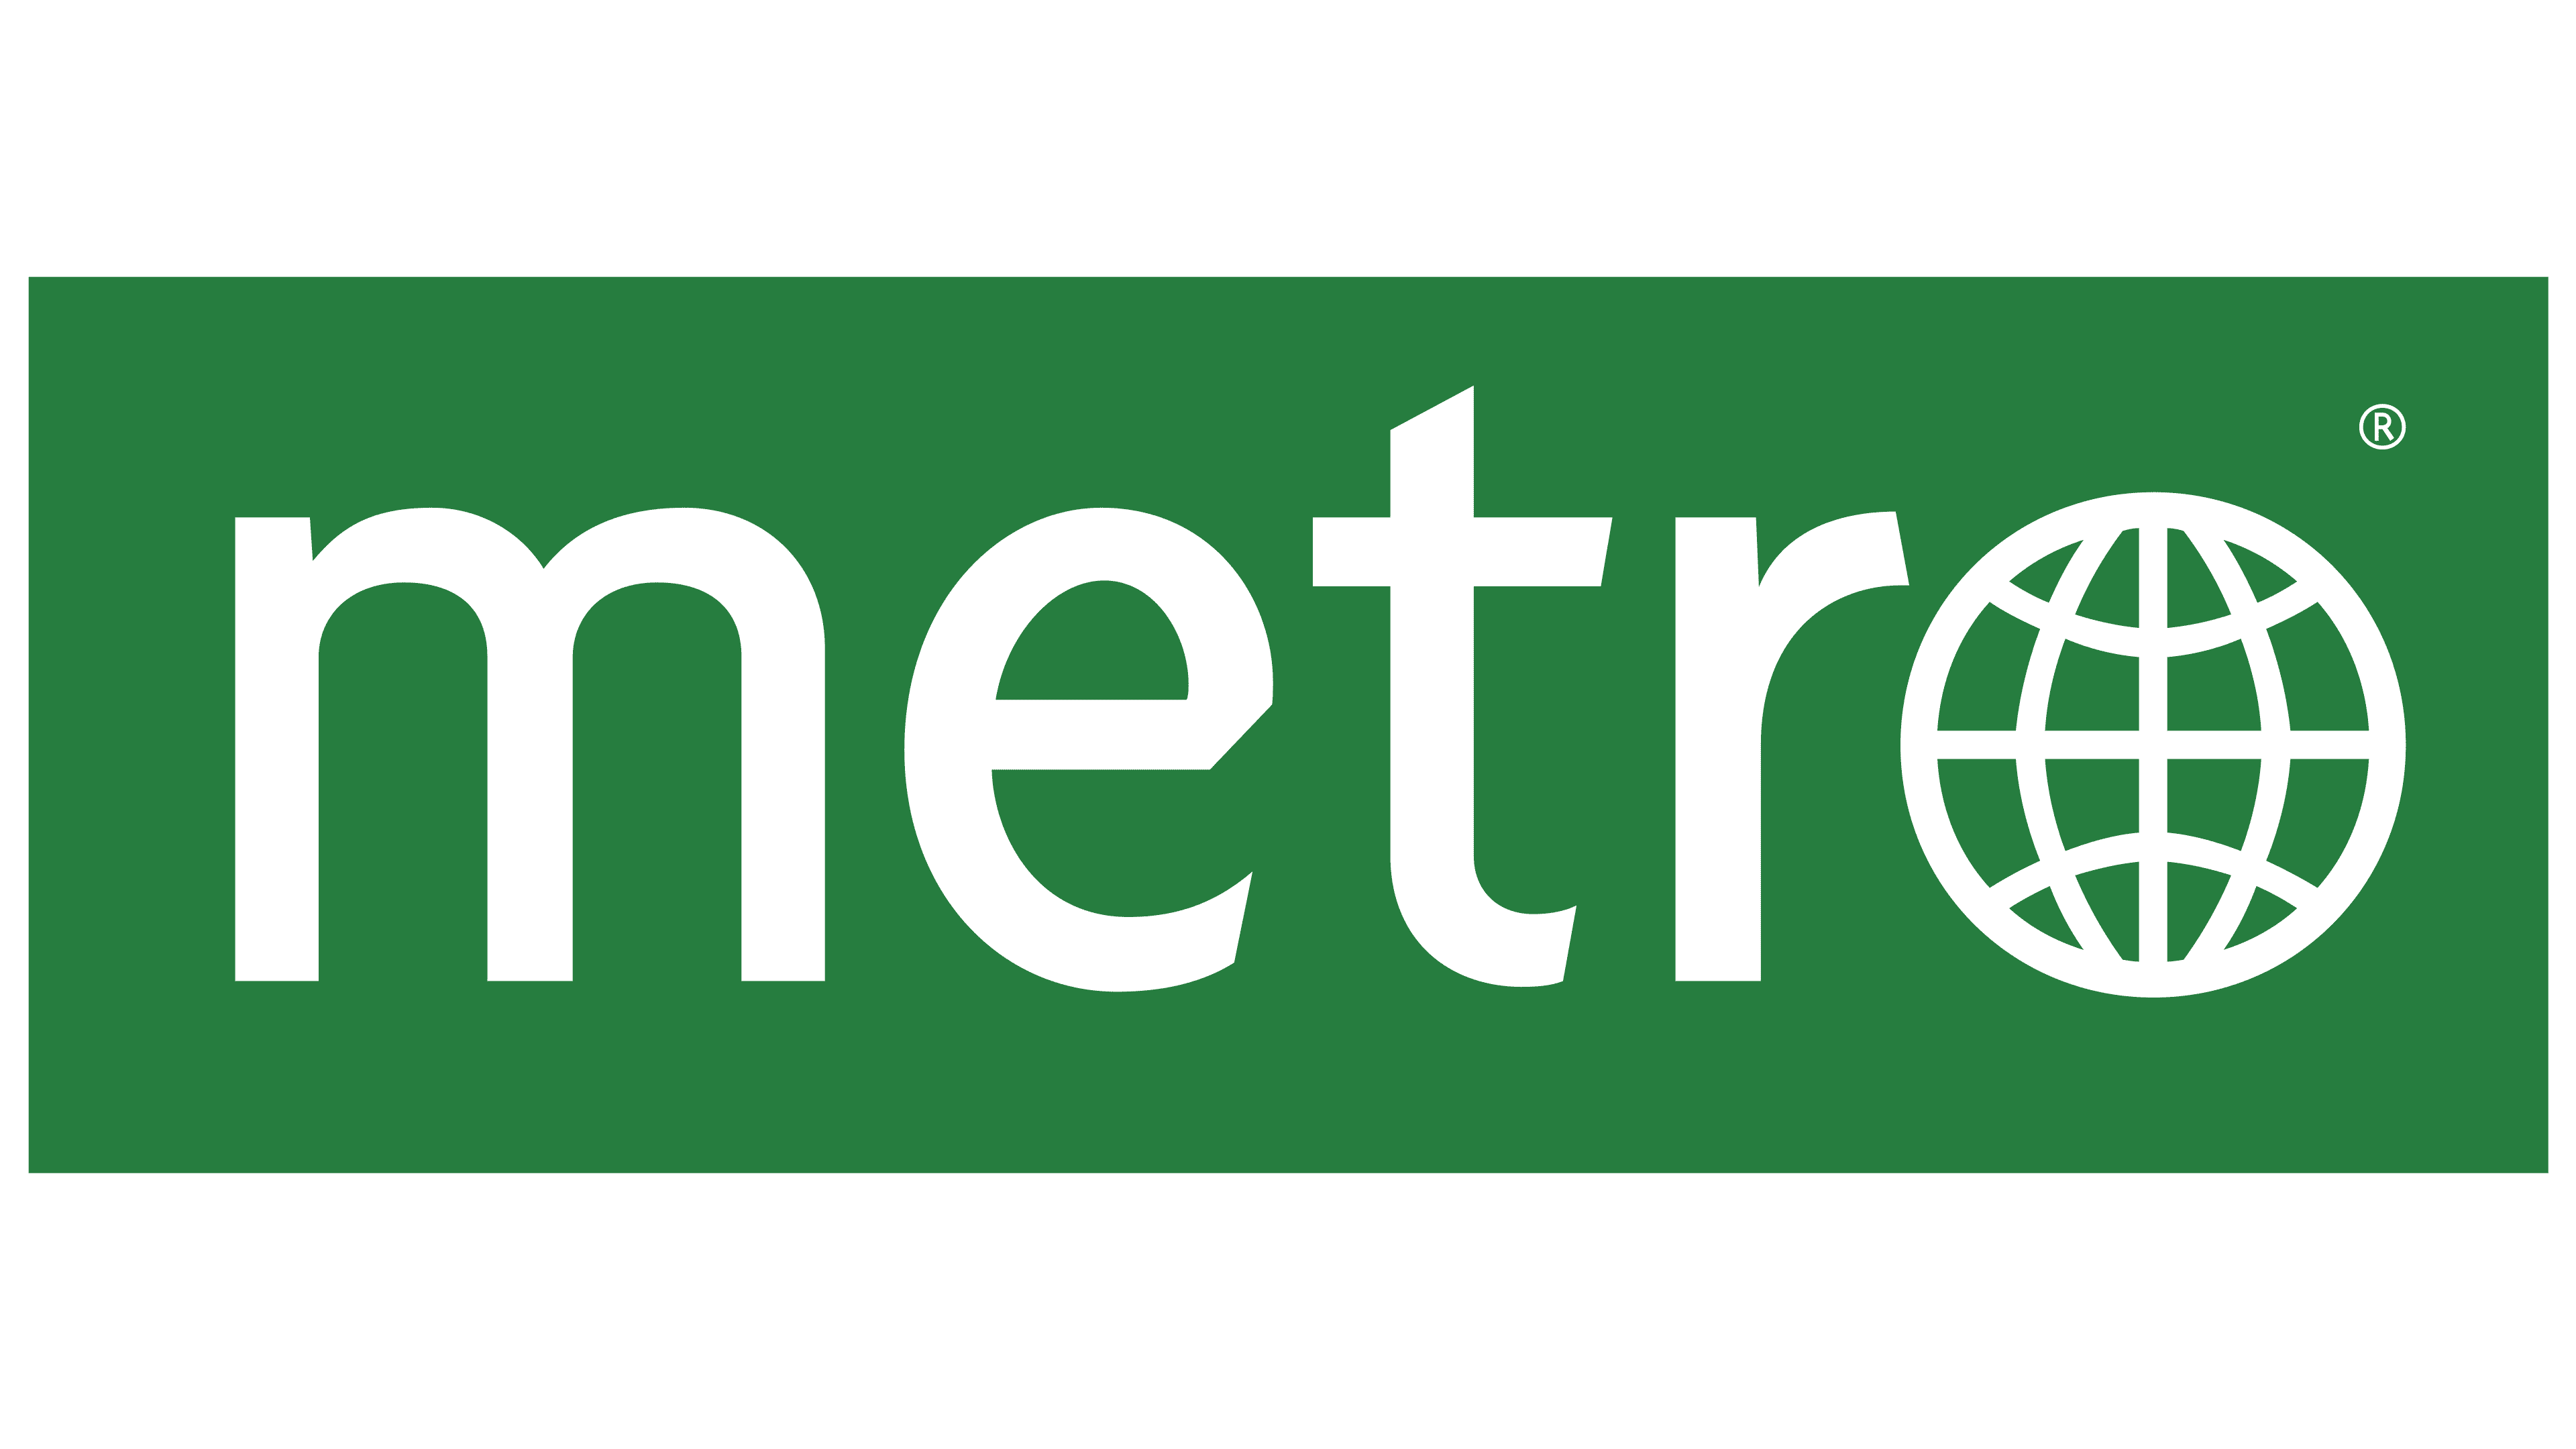 Washington Metro Logo Vector SVG Icon (3) - SVG Repo